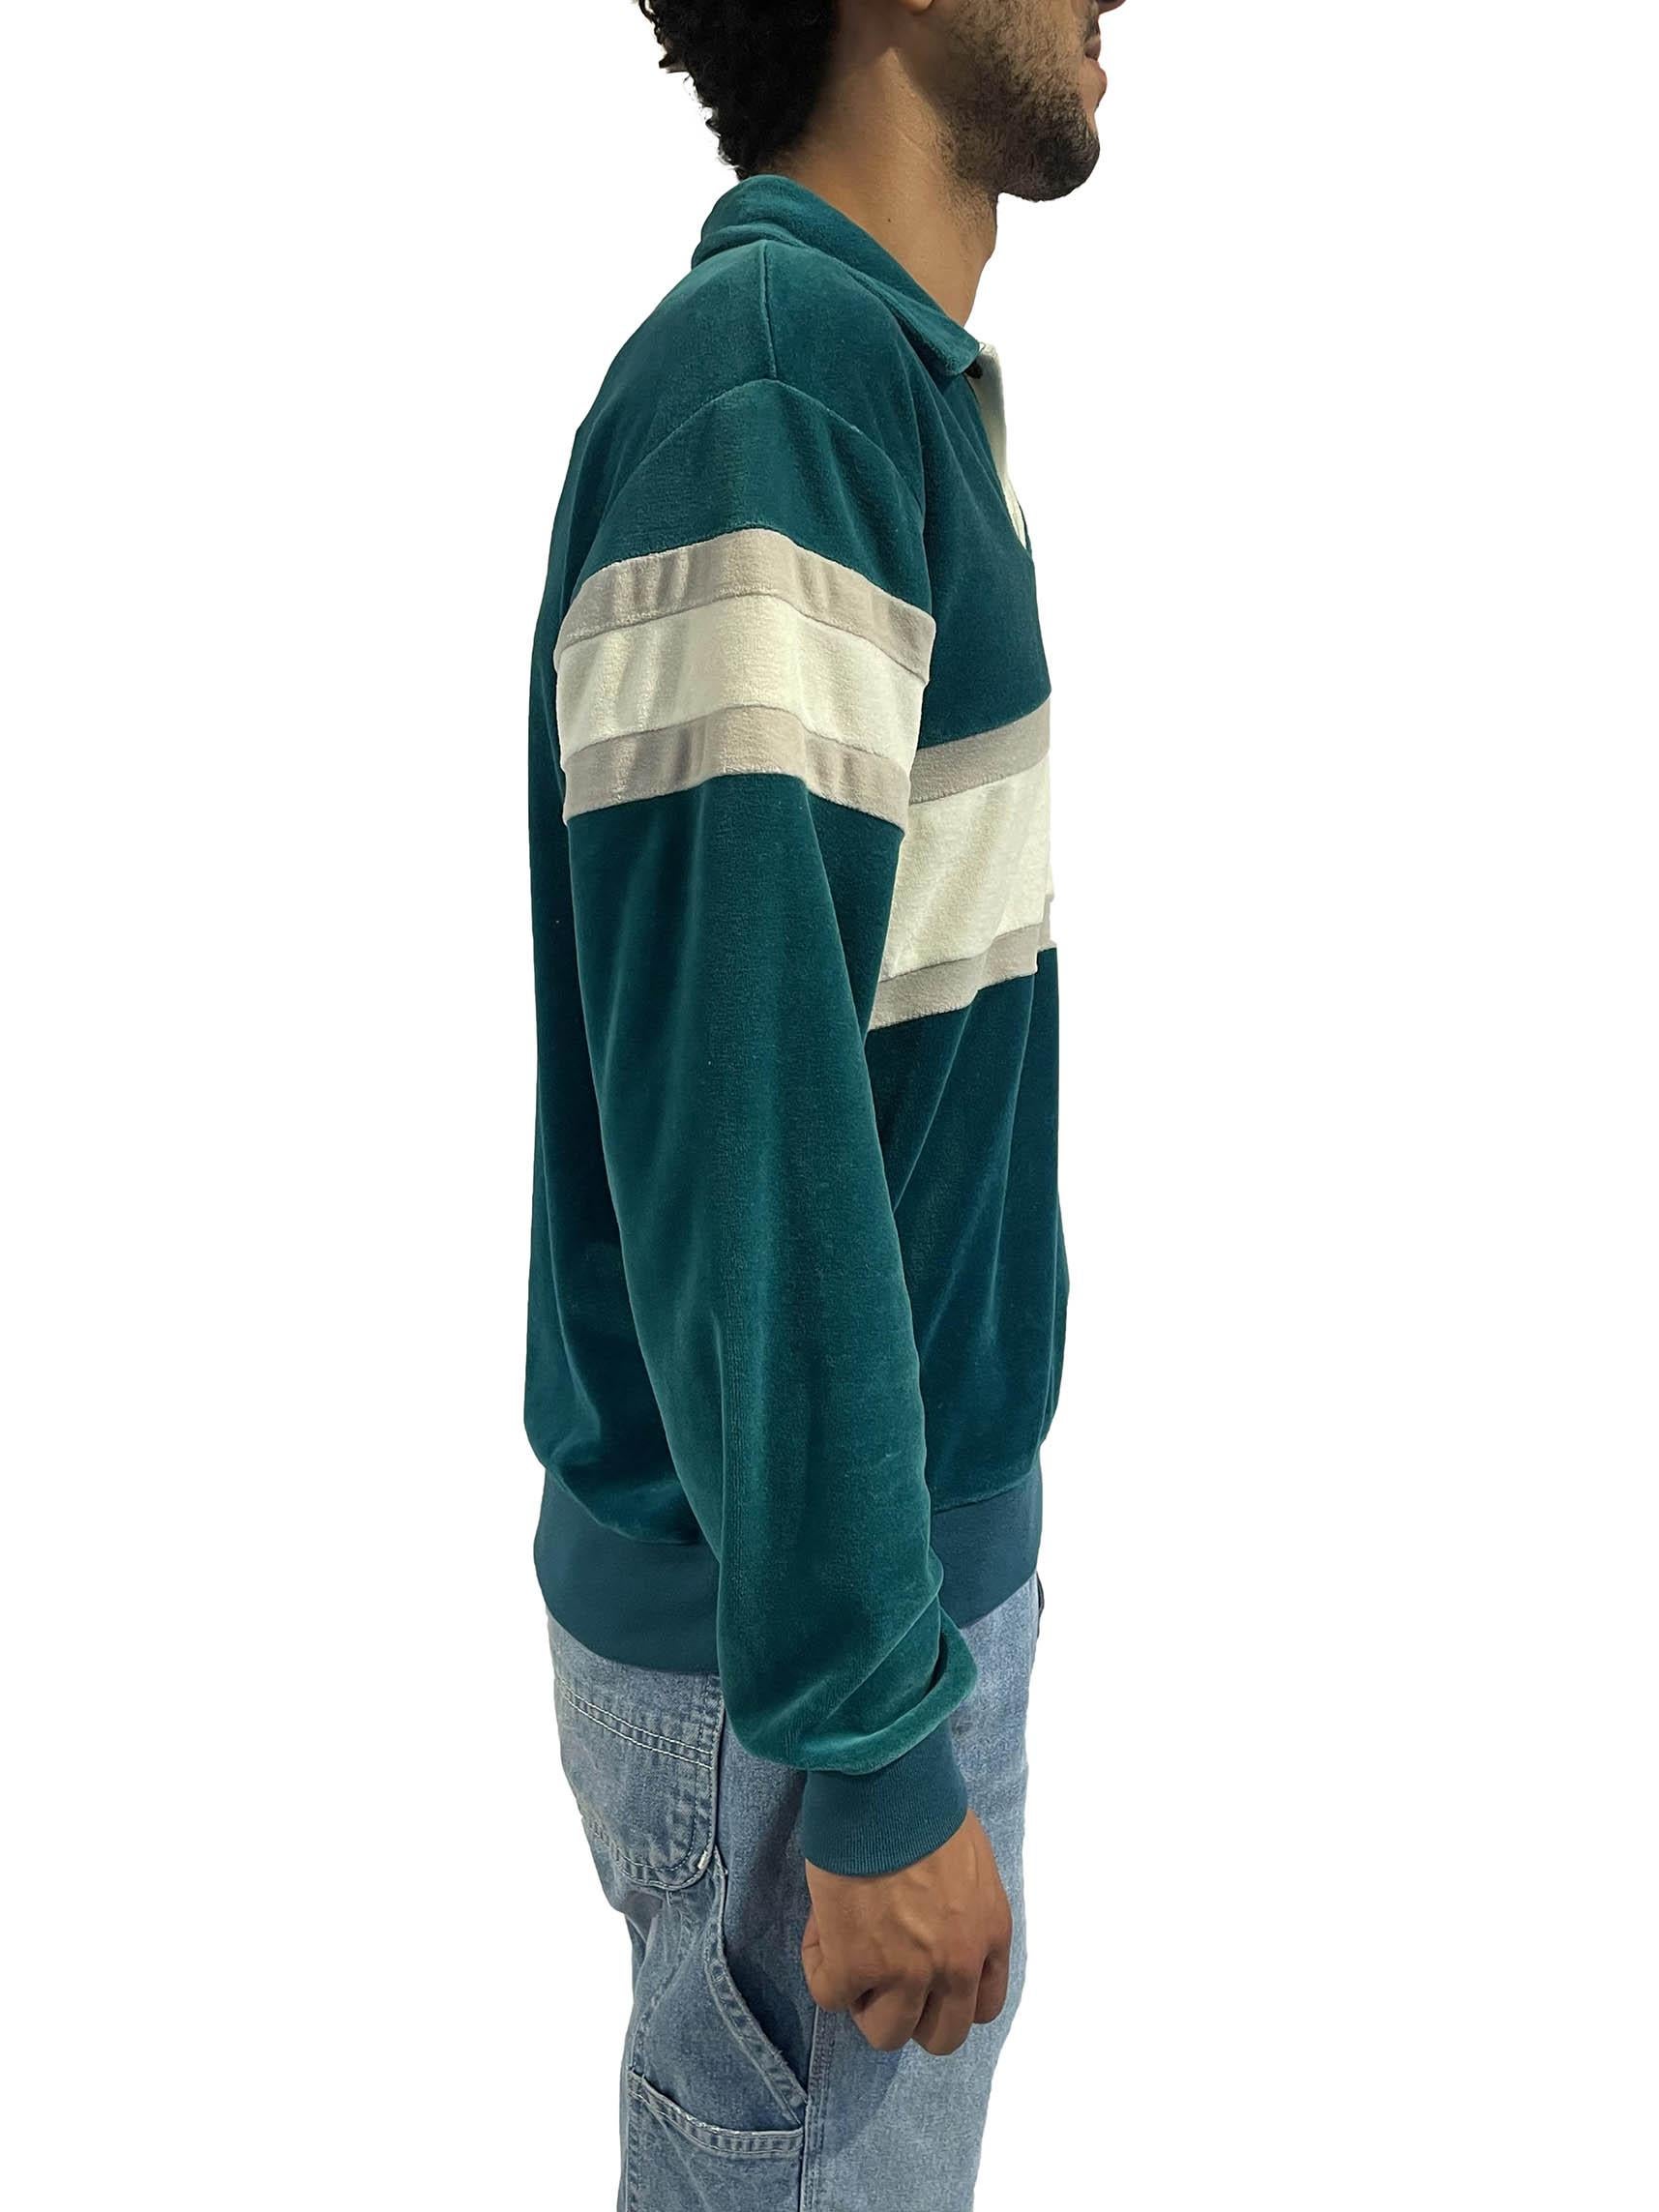 1980er Pullover-Shirt aus Polyester/Baumwolle mit blau-weiß gestreiften Streifen (Blau)